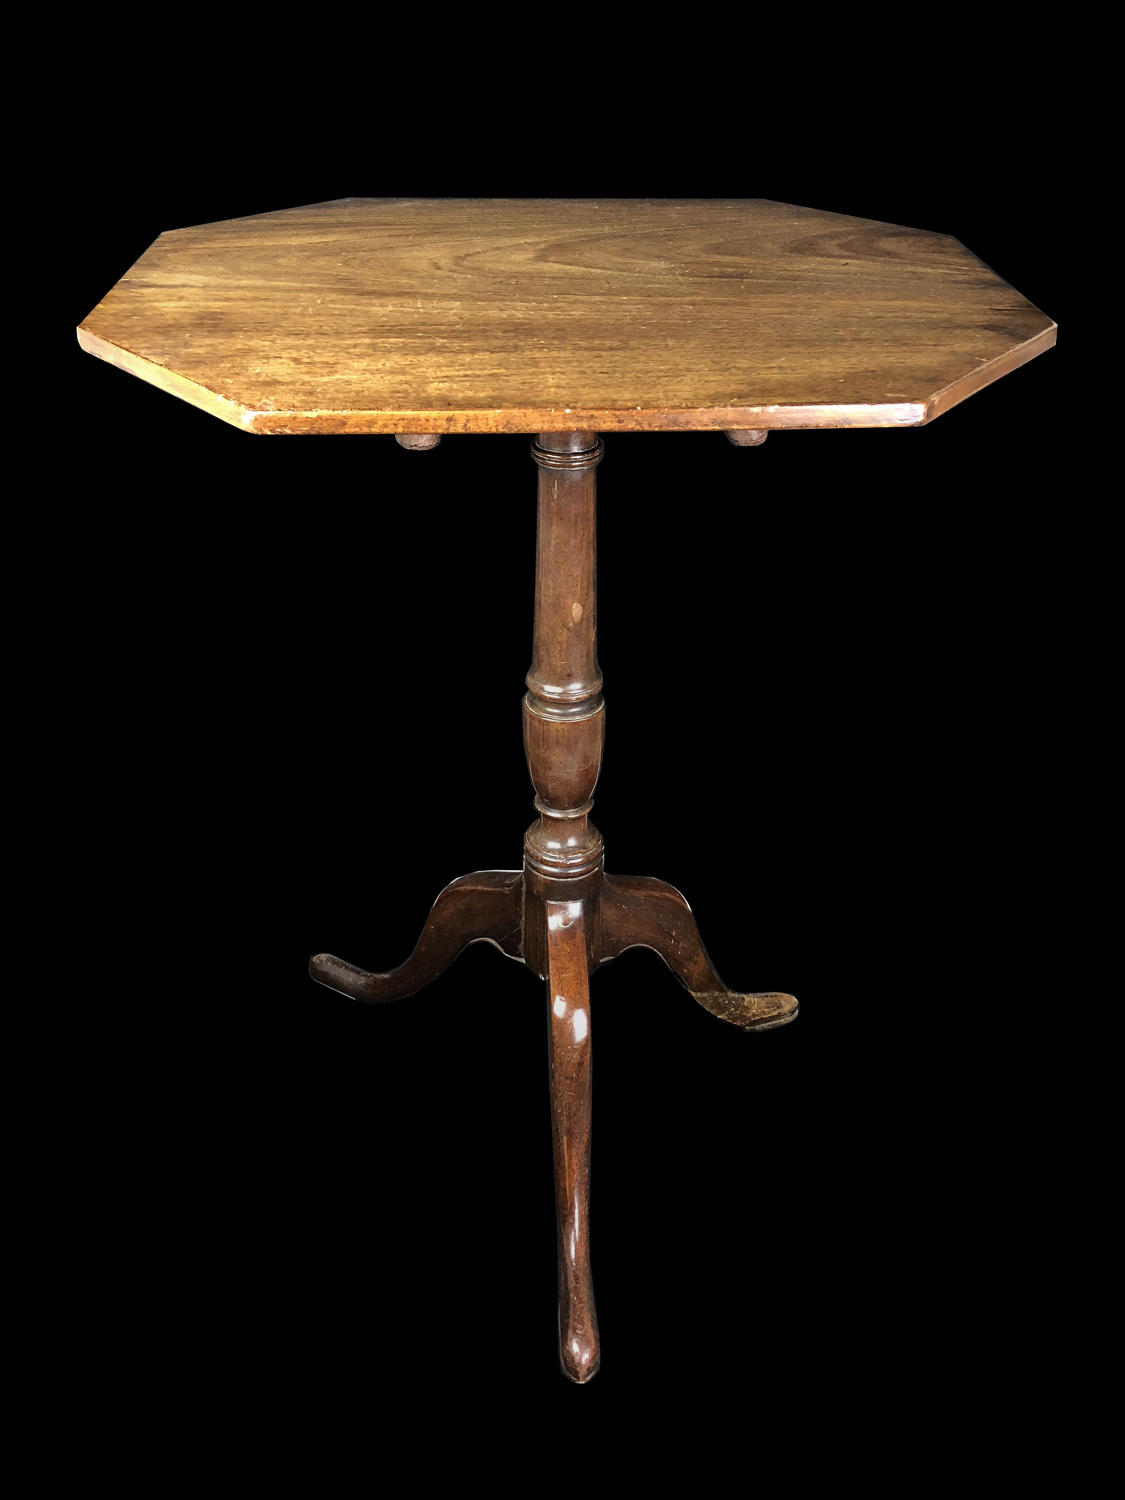 A mahogany tripod table